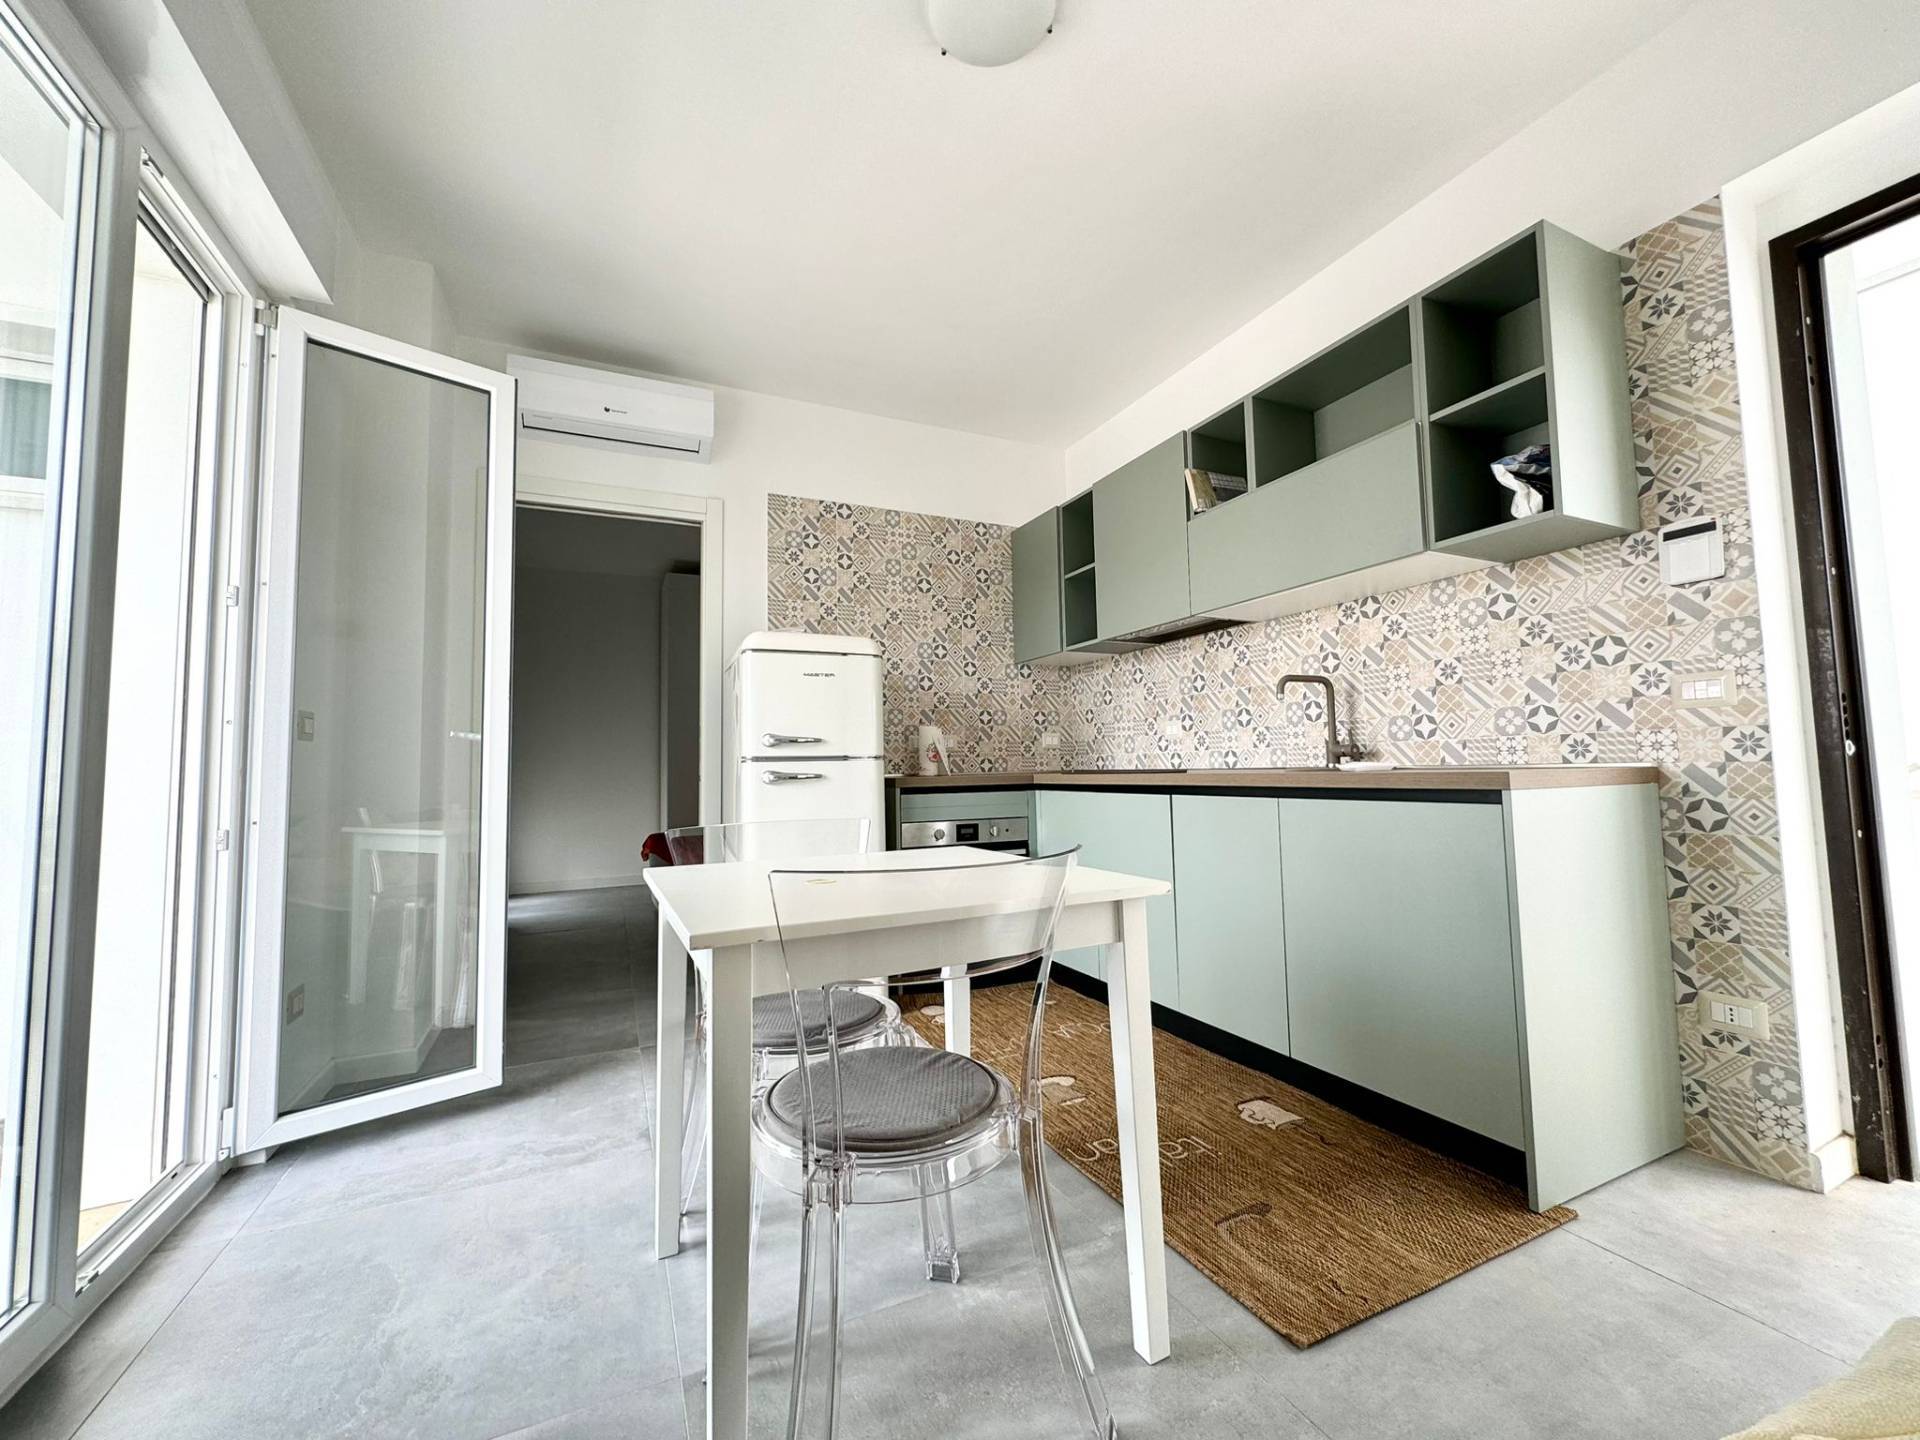 Appartamento in vendita a Lesina, 2 locali, prezzo € 70.000 | PortaleAgenzieImmobiliari.it